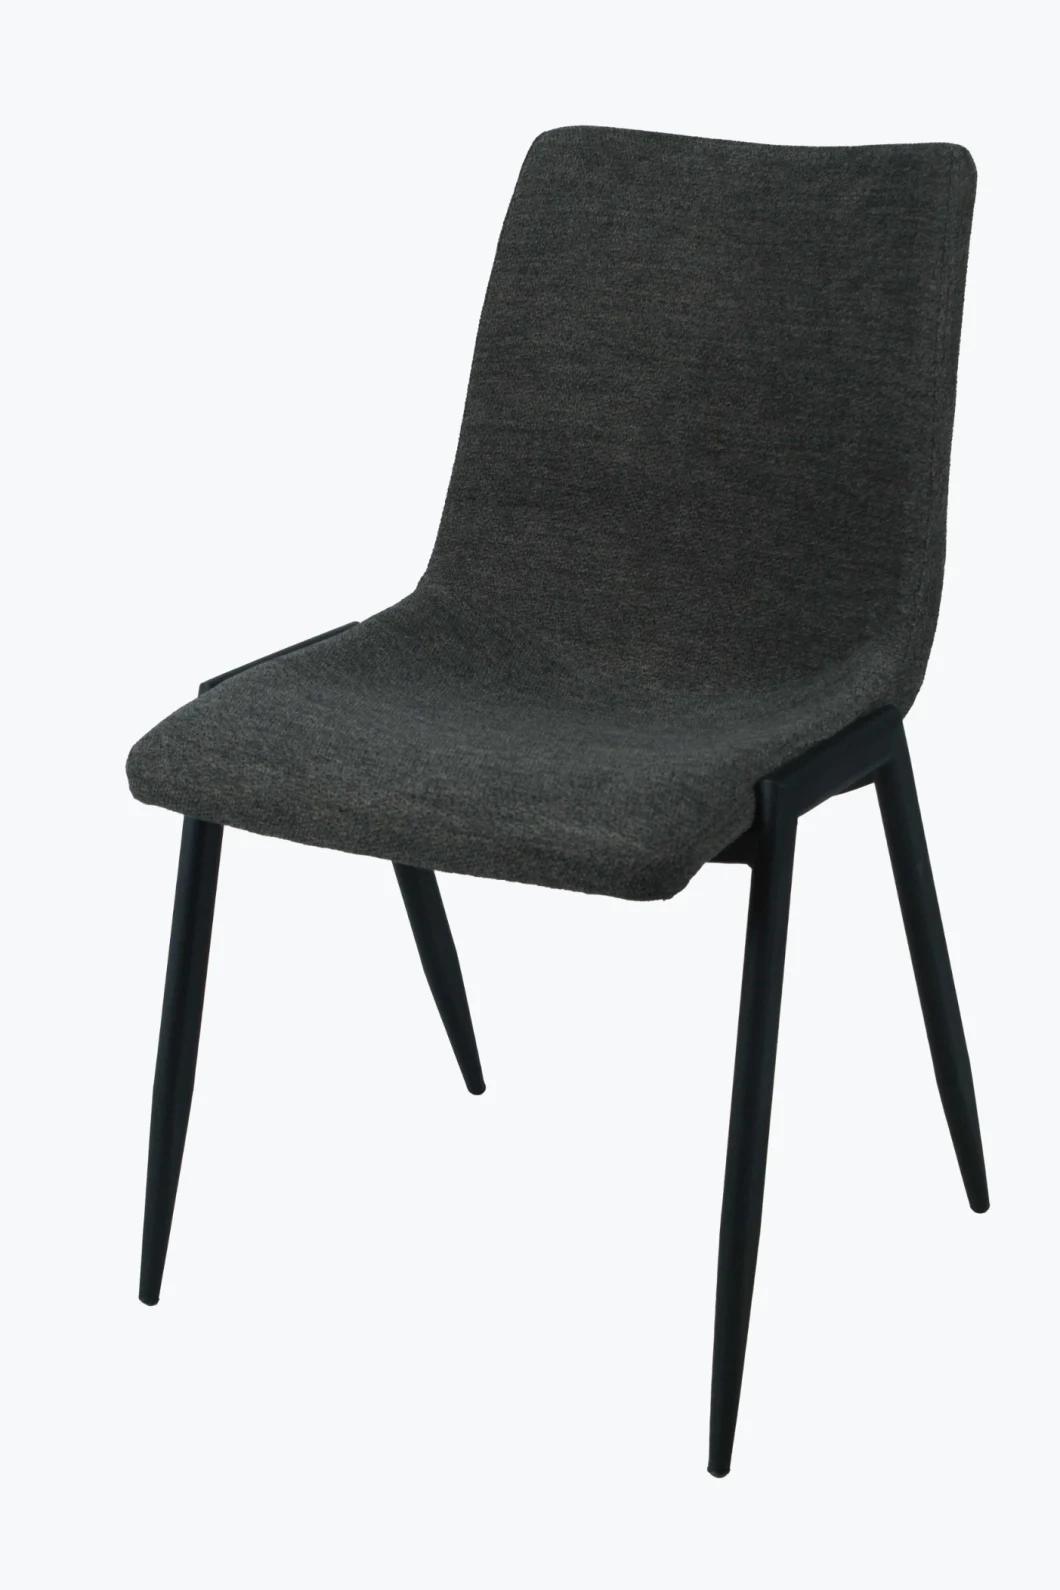 Home Living Room Upholstered Velvet Fabric Dining Room Furniture Restaurant Hotel Spraying Legs Steel Dining Chair